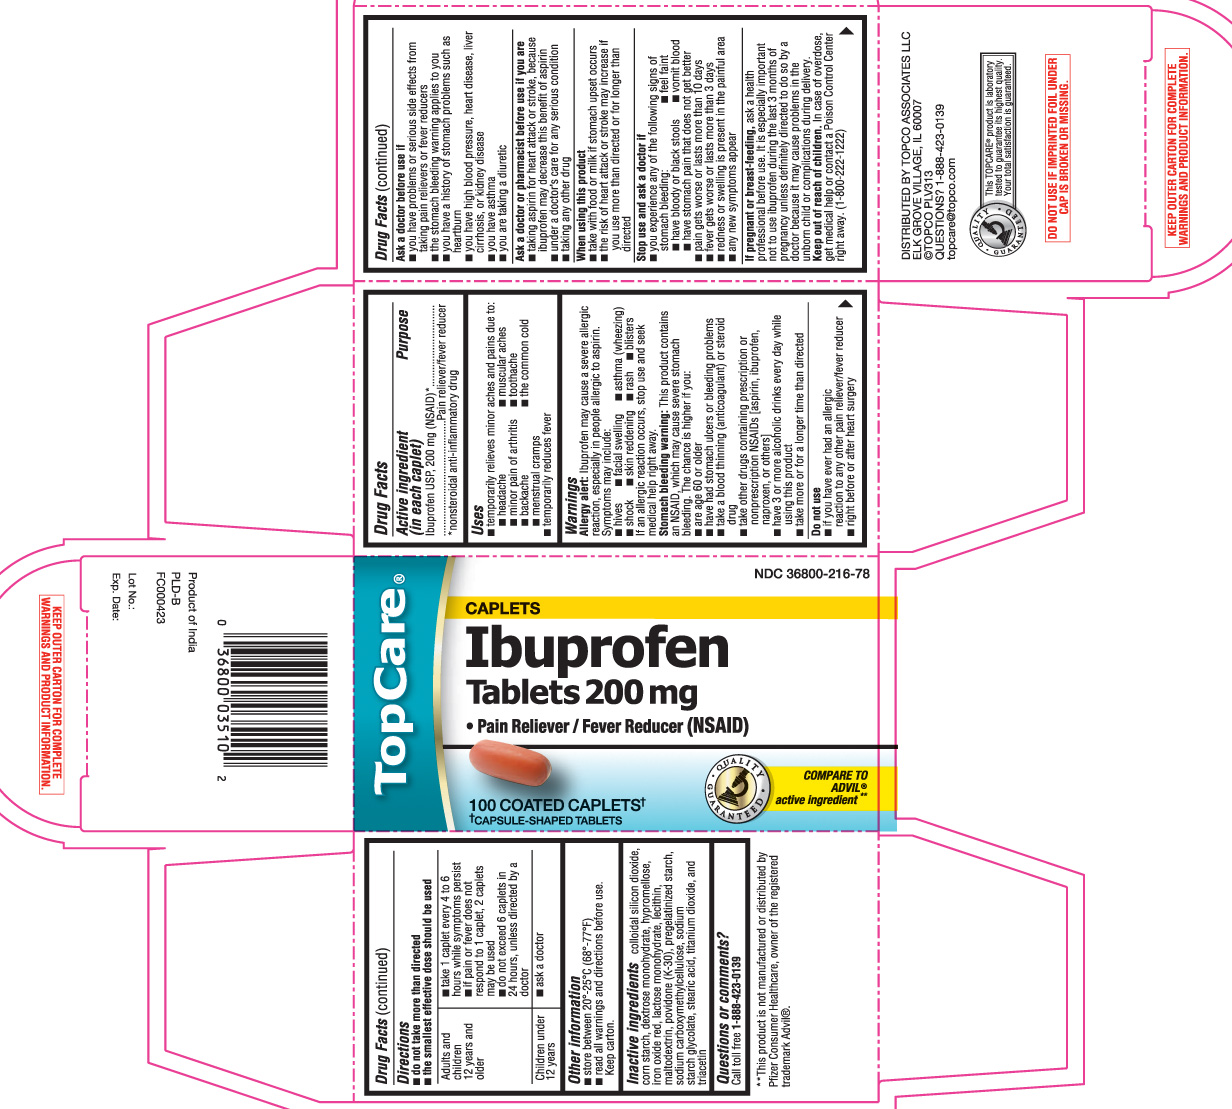 Ibuprofen 200 mg